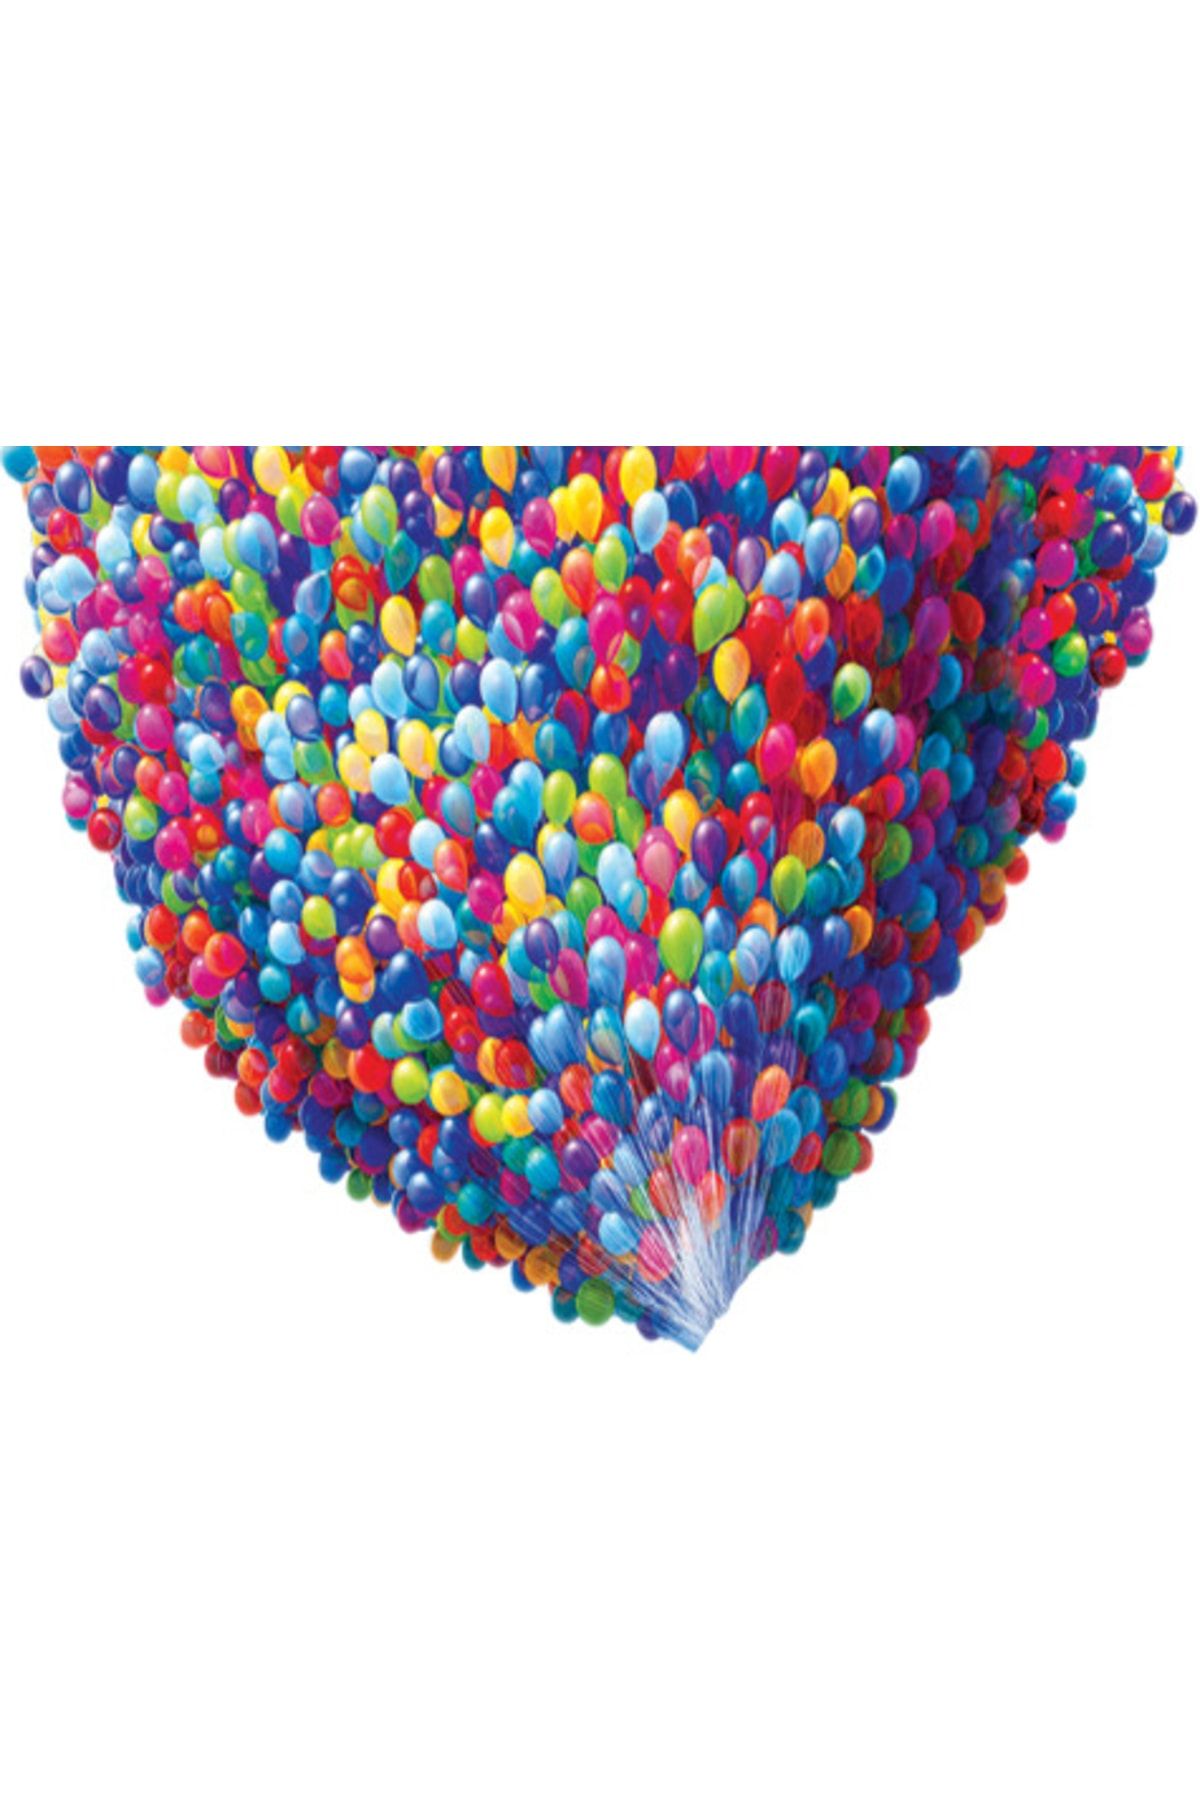 Piİthalat Renkli Balon - 100 Adet